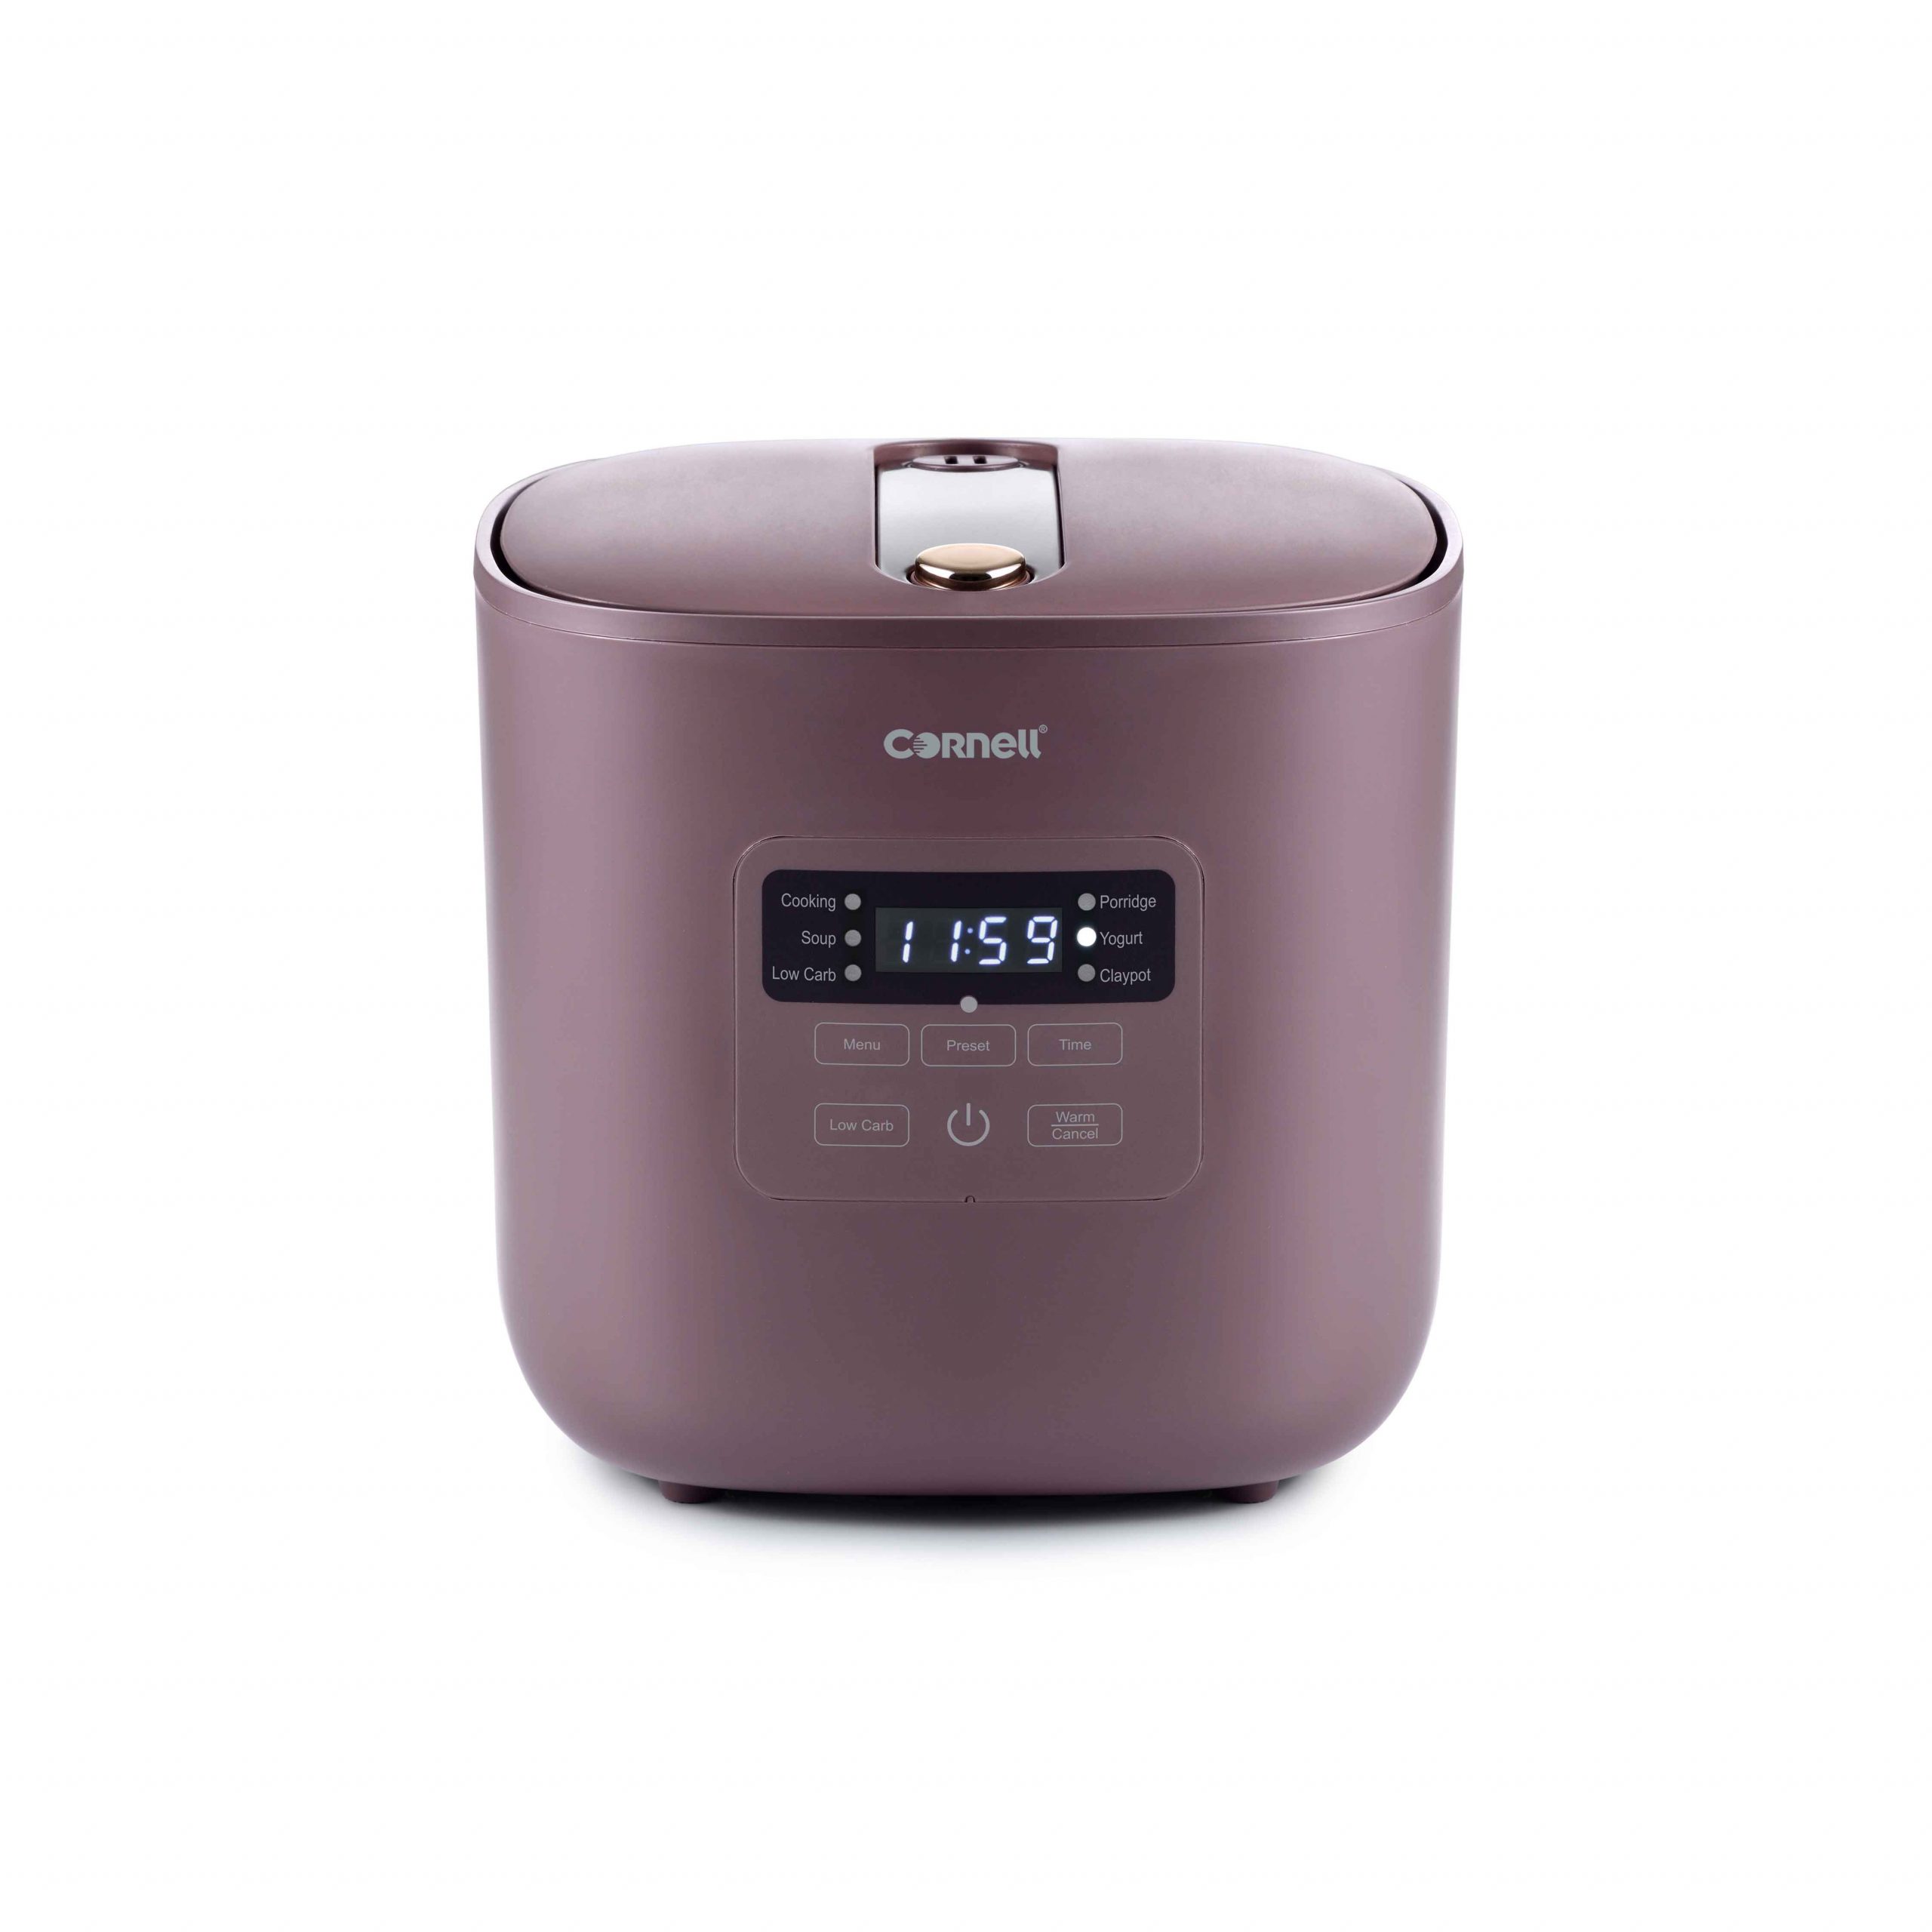 CSC-E40PC 4 Litre Purple Clay Digital Slow Cooker - Cornell Appliances